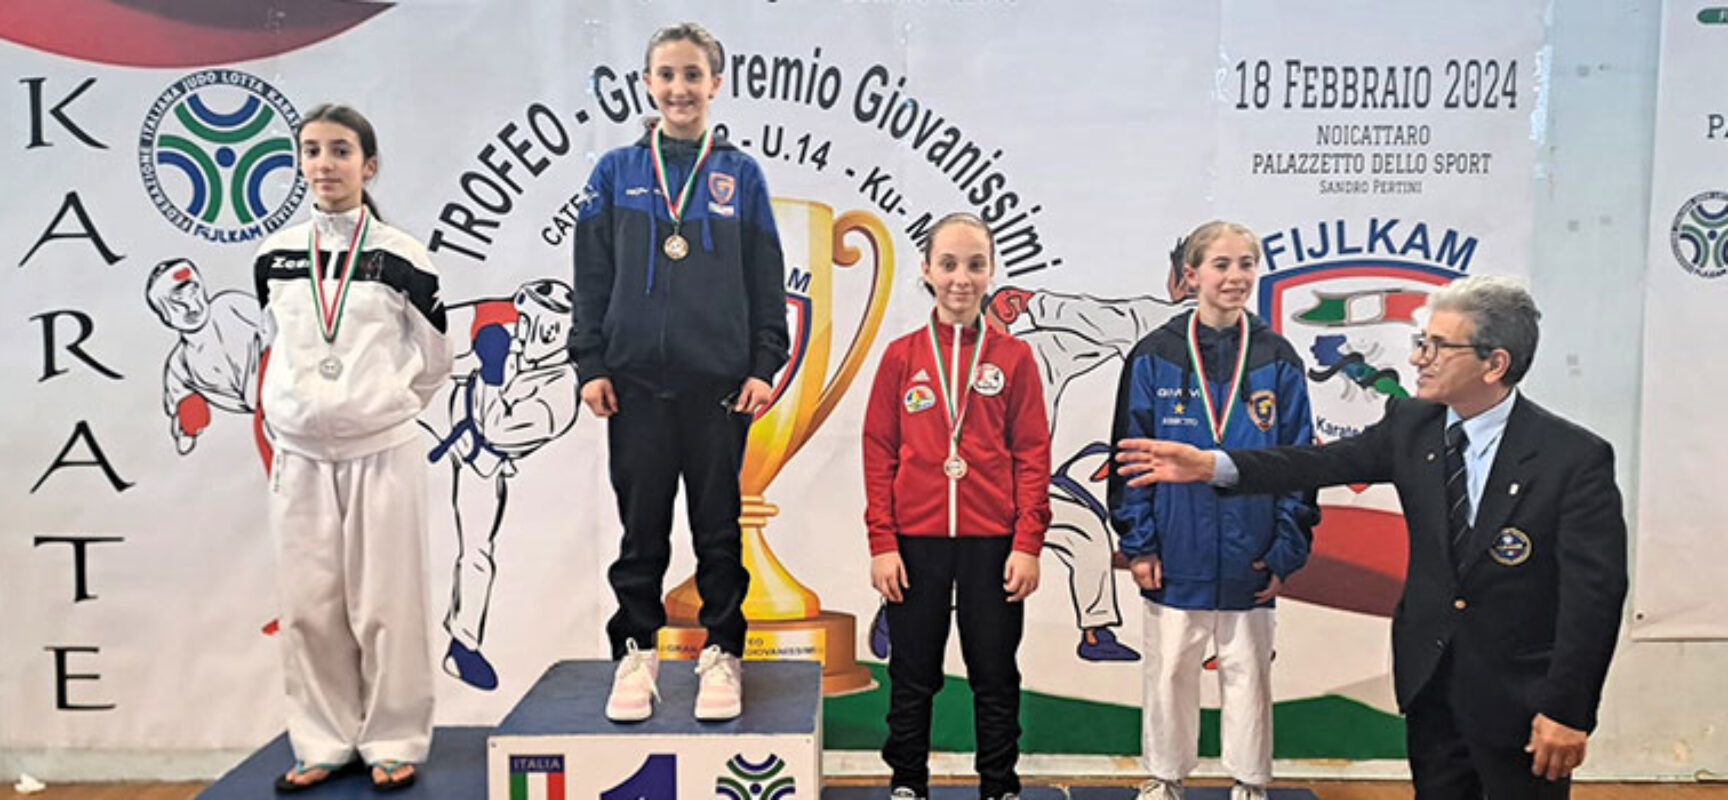 Madaglie di bronzo per i karateka biscegliesi in gara a Noicattaro